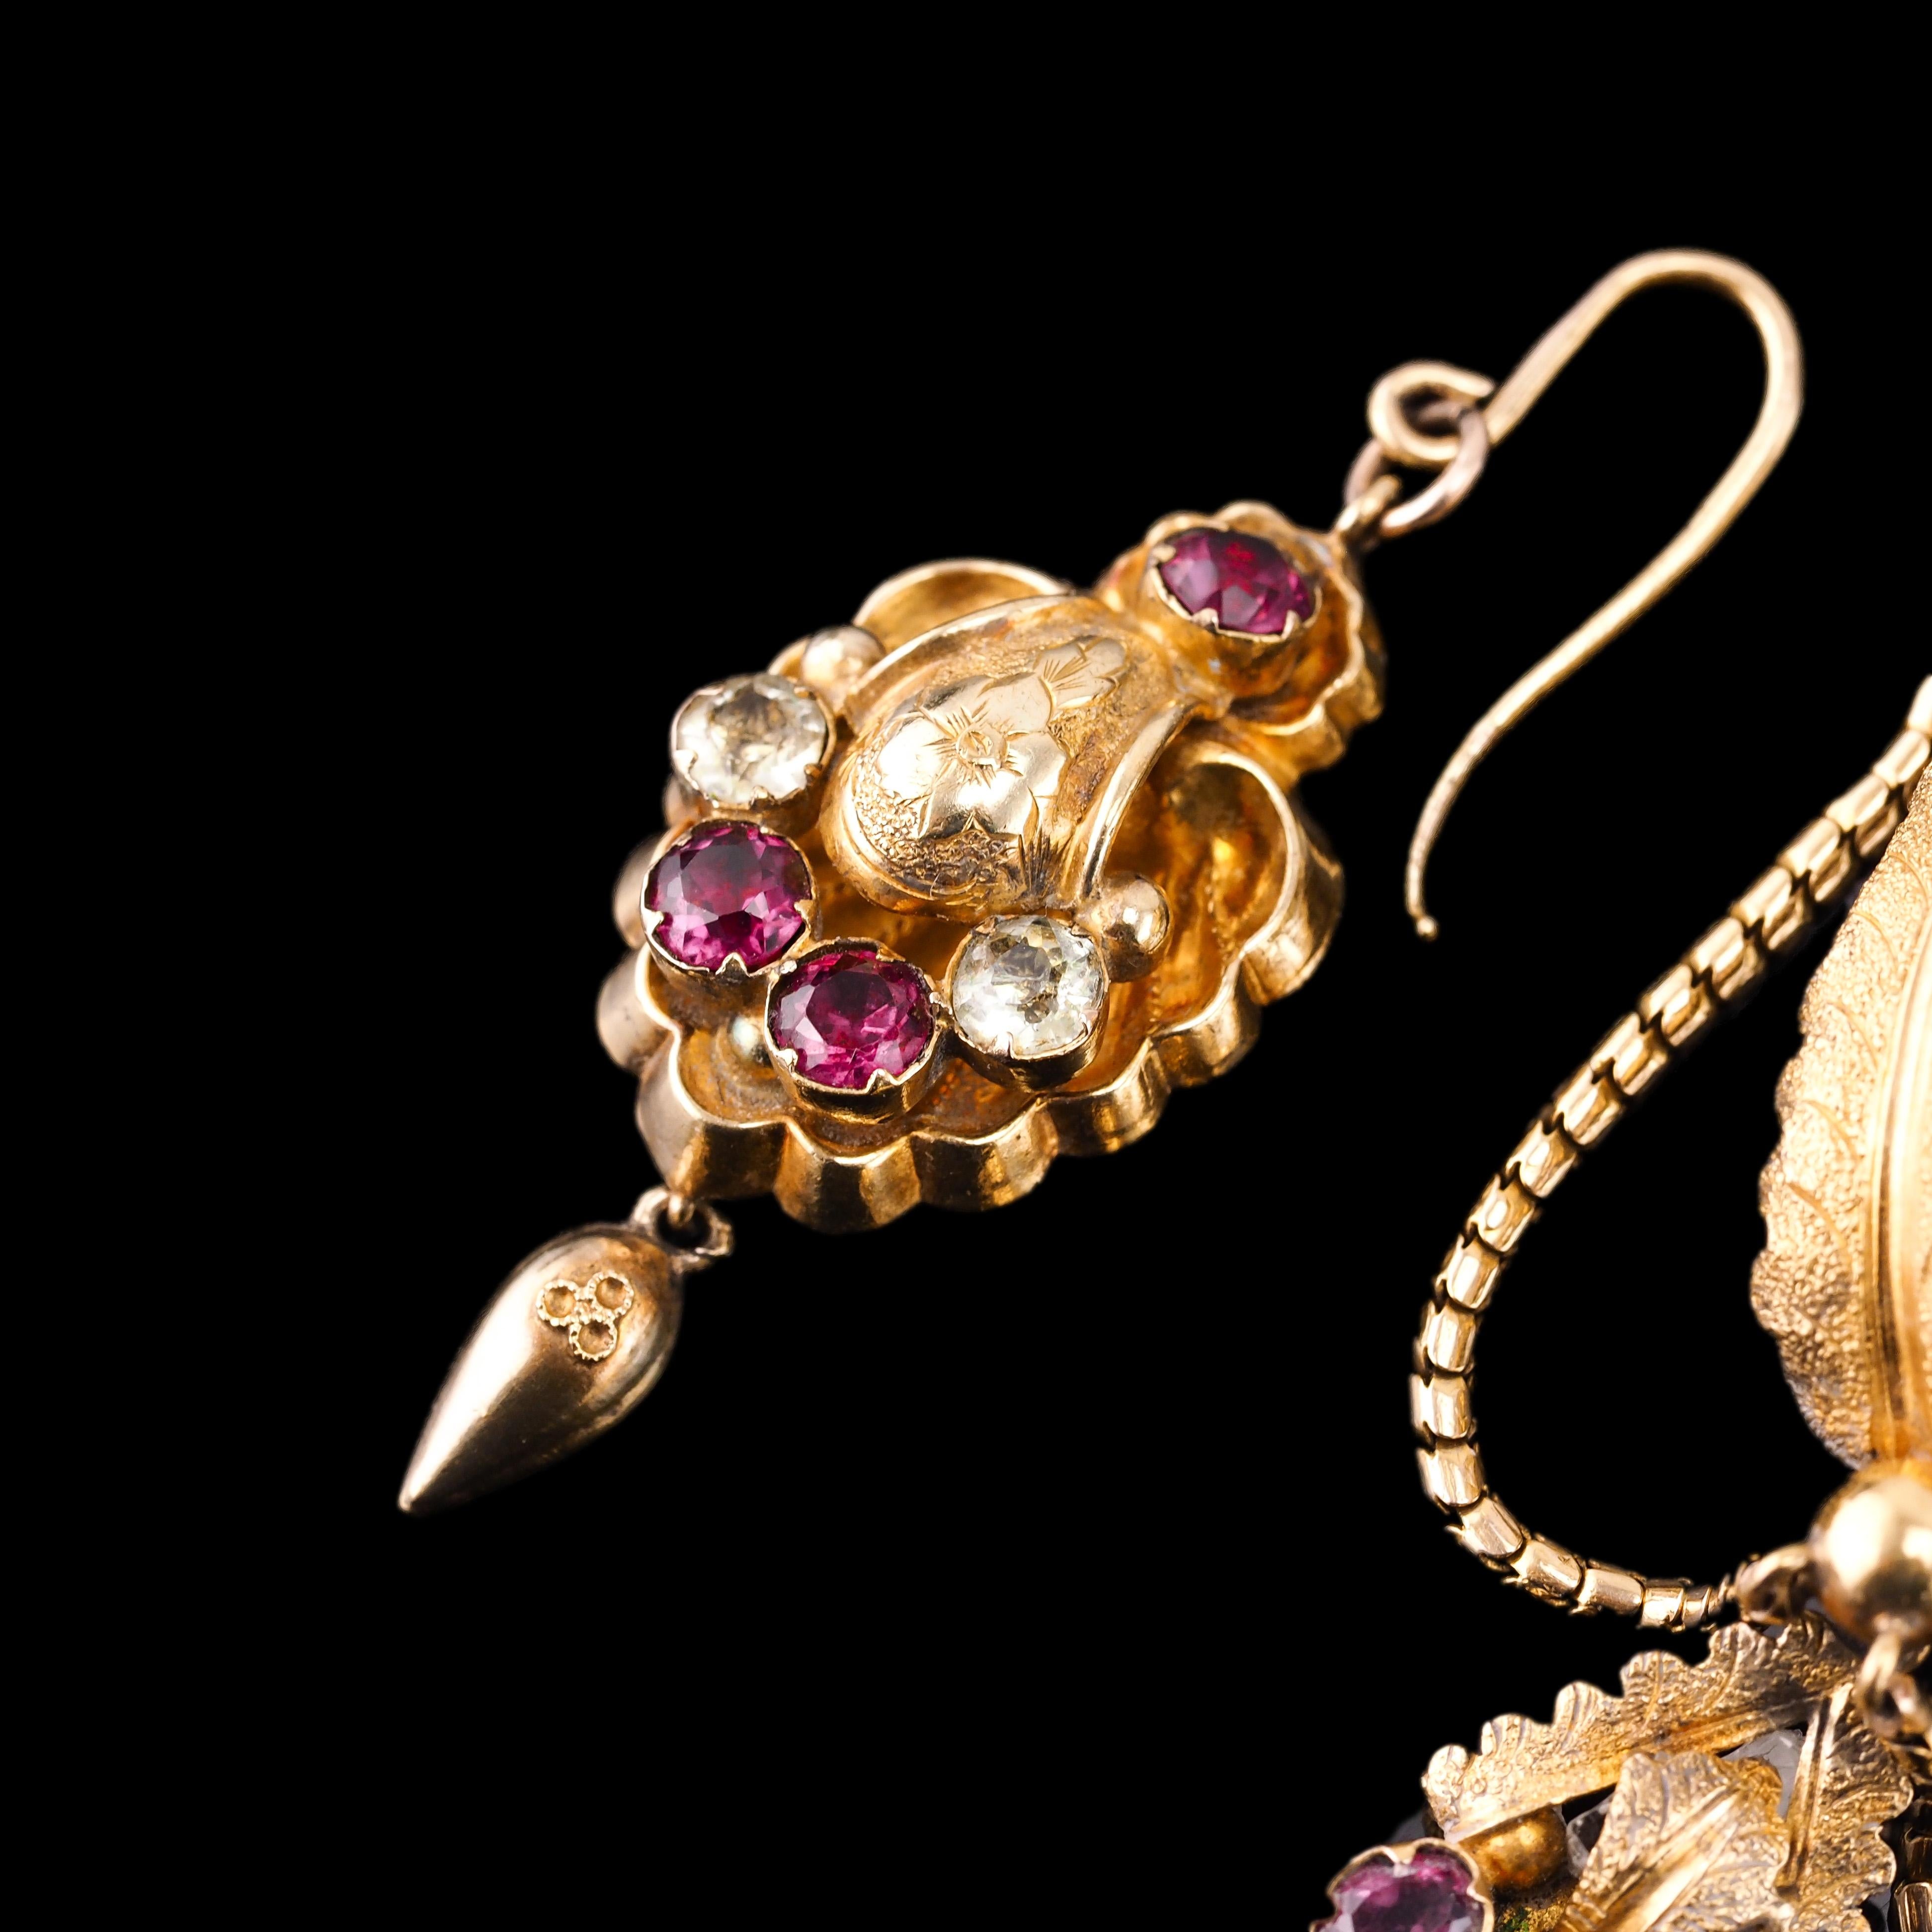 Antique 18K Gold Brooch Pendant & Earrings Garnet & Chrysoberyl - c.1870 For Sale 12